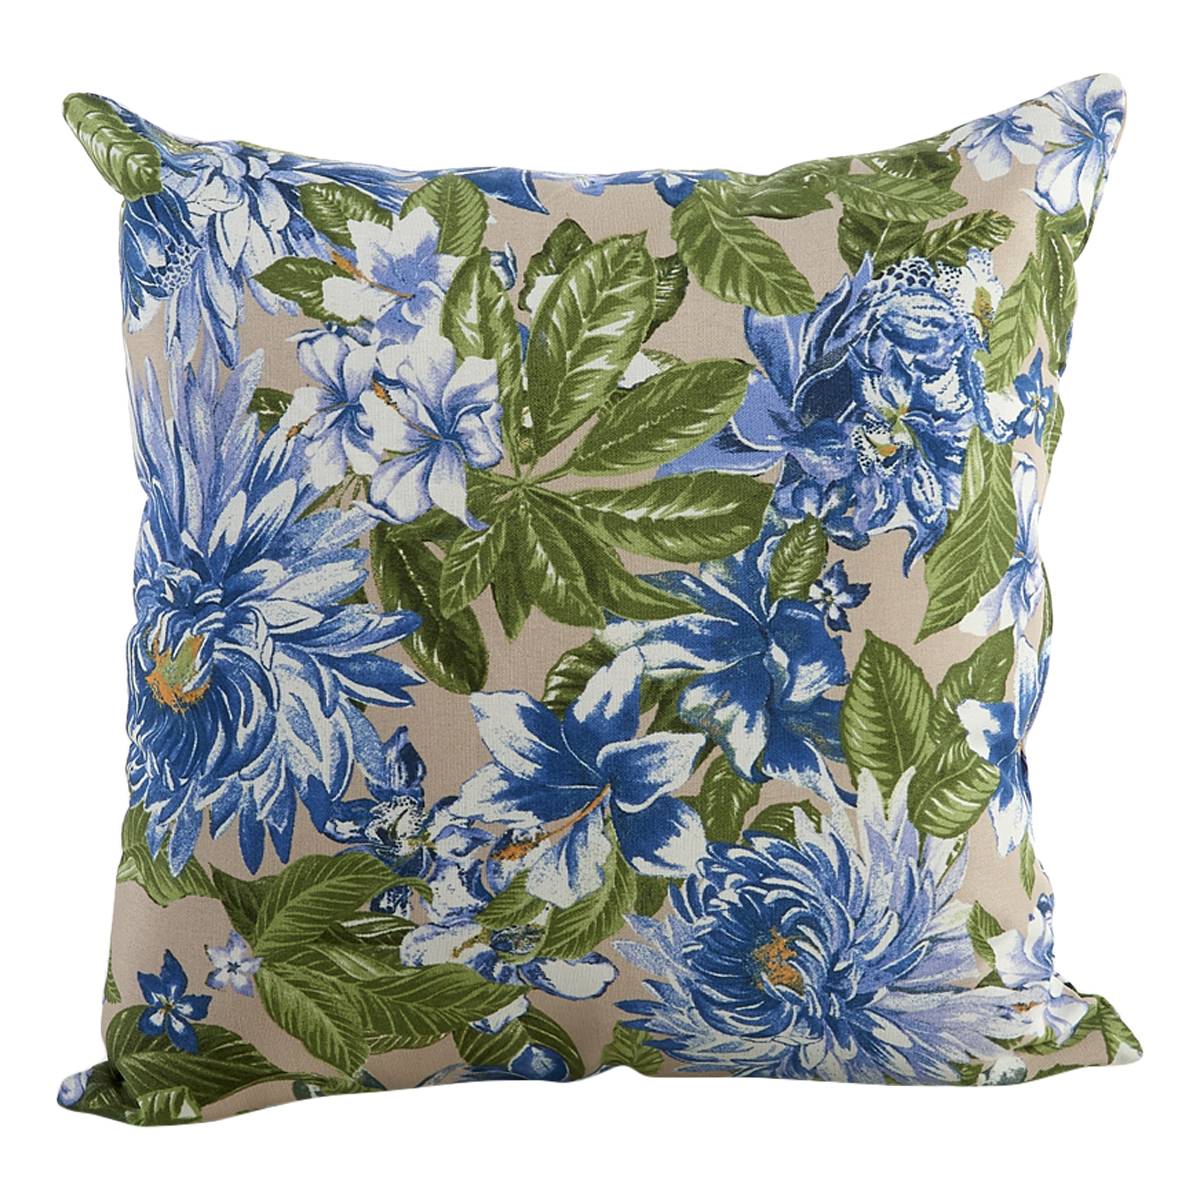 Jordan Manufacturing Outdoor Toss Pillow - Tan/Blue Floral